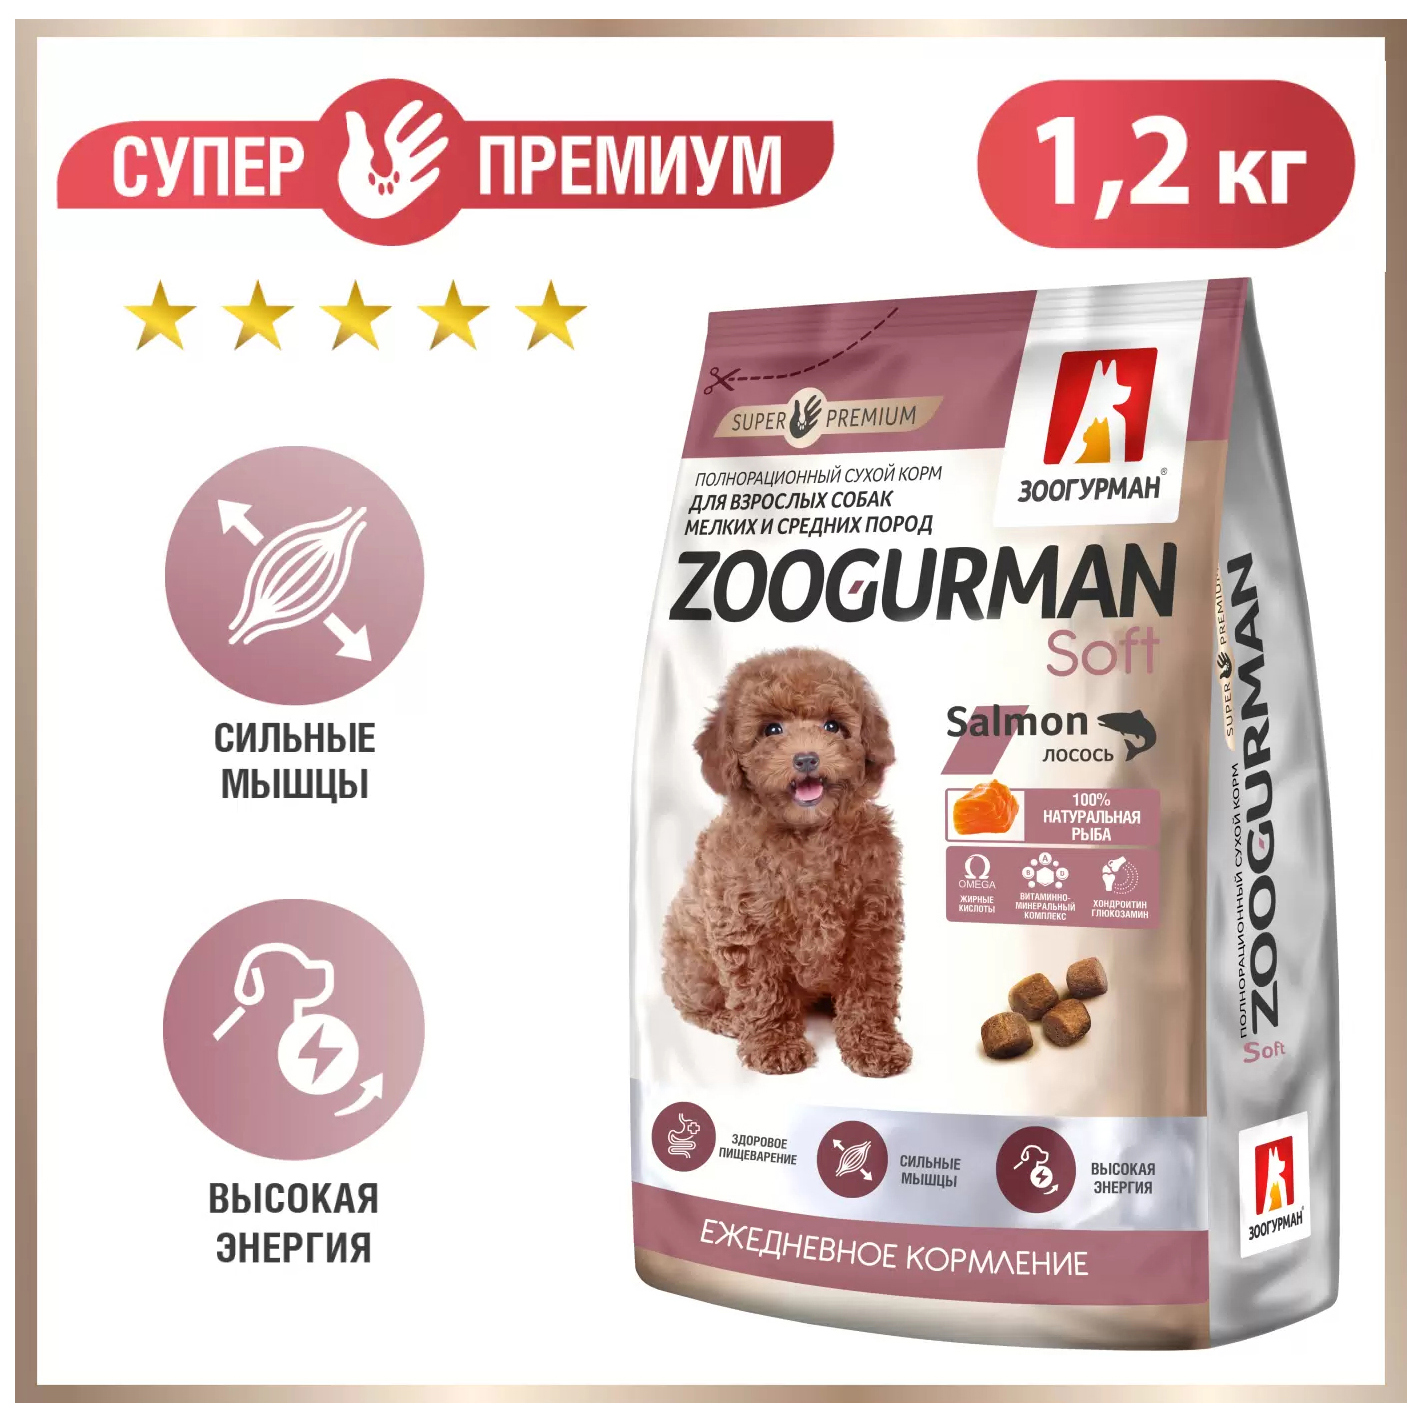 Сухой корм для собак Зоогурман Soft, лосось, 1,2 кг